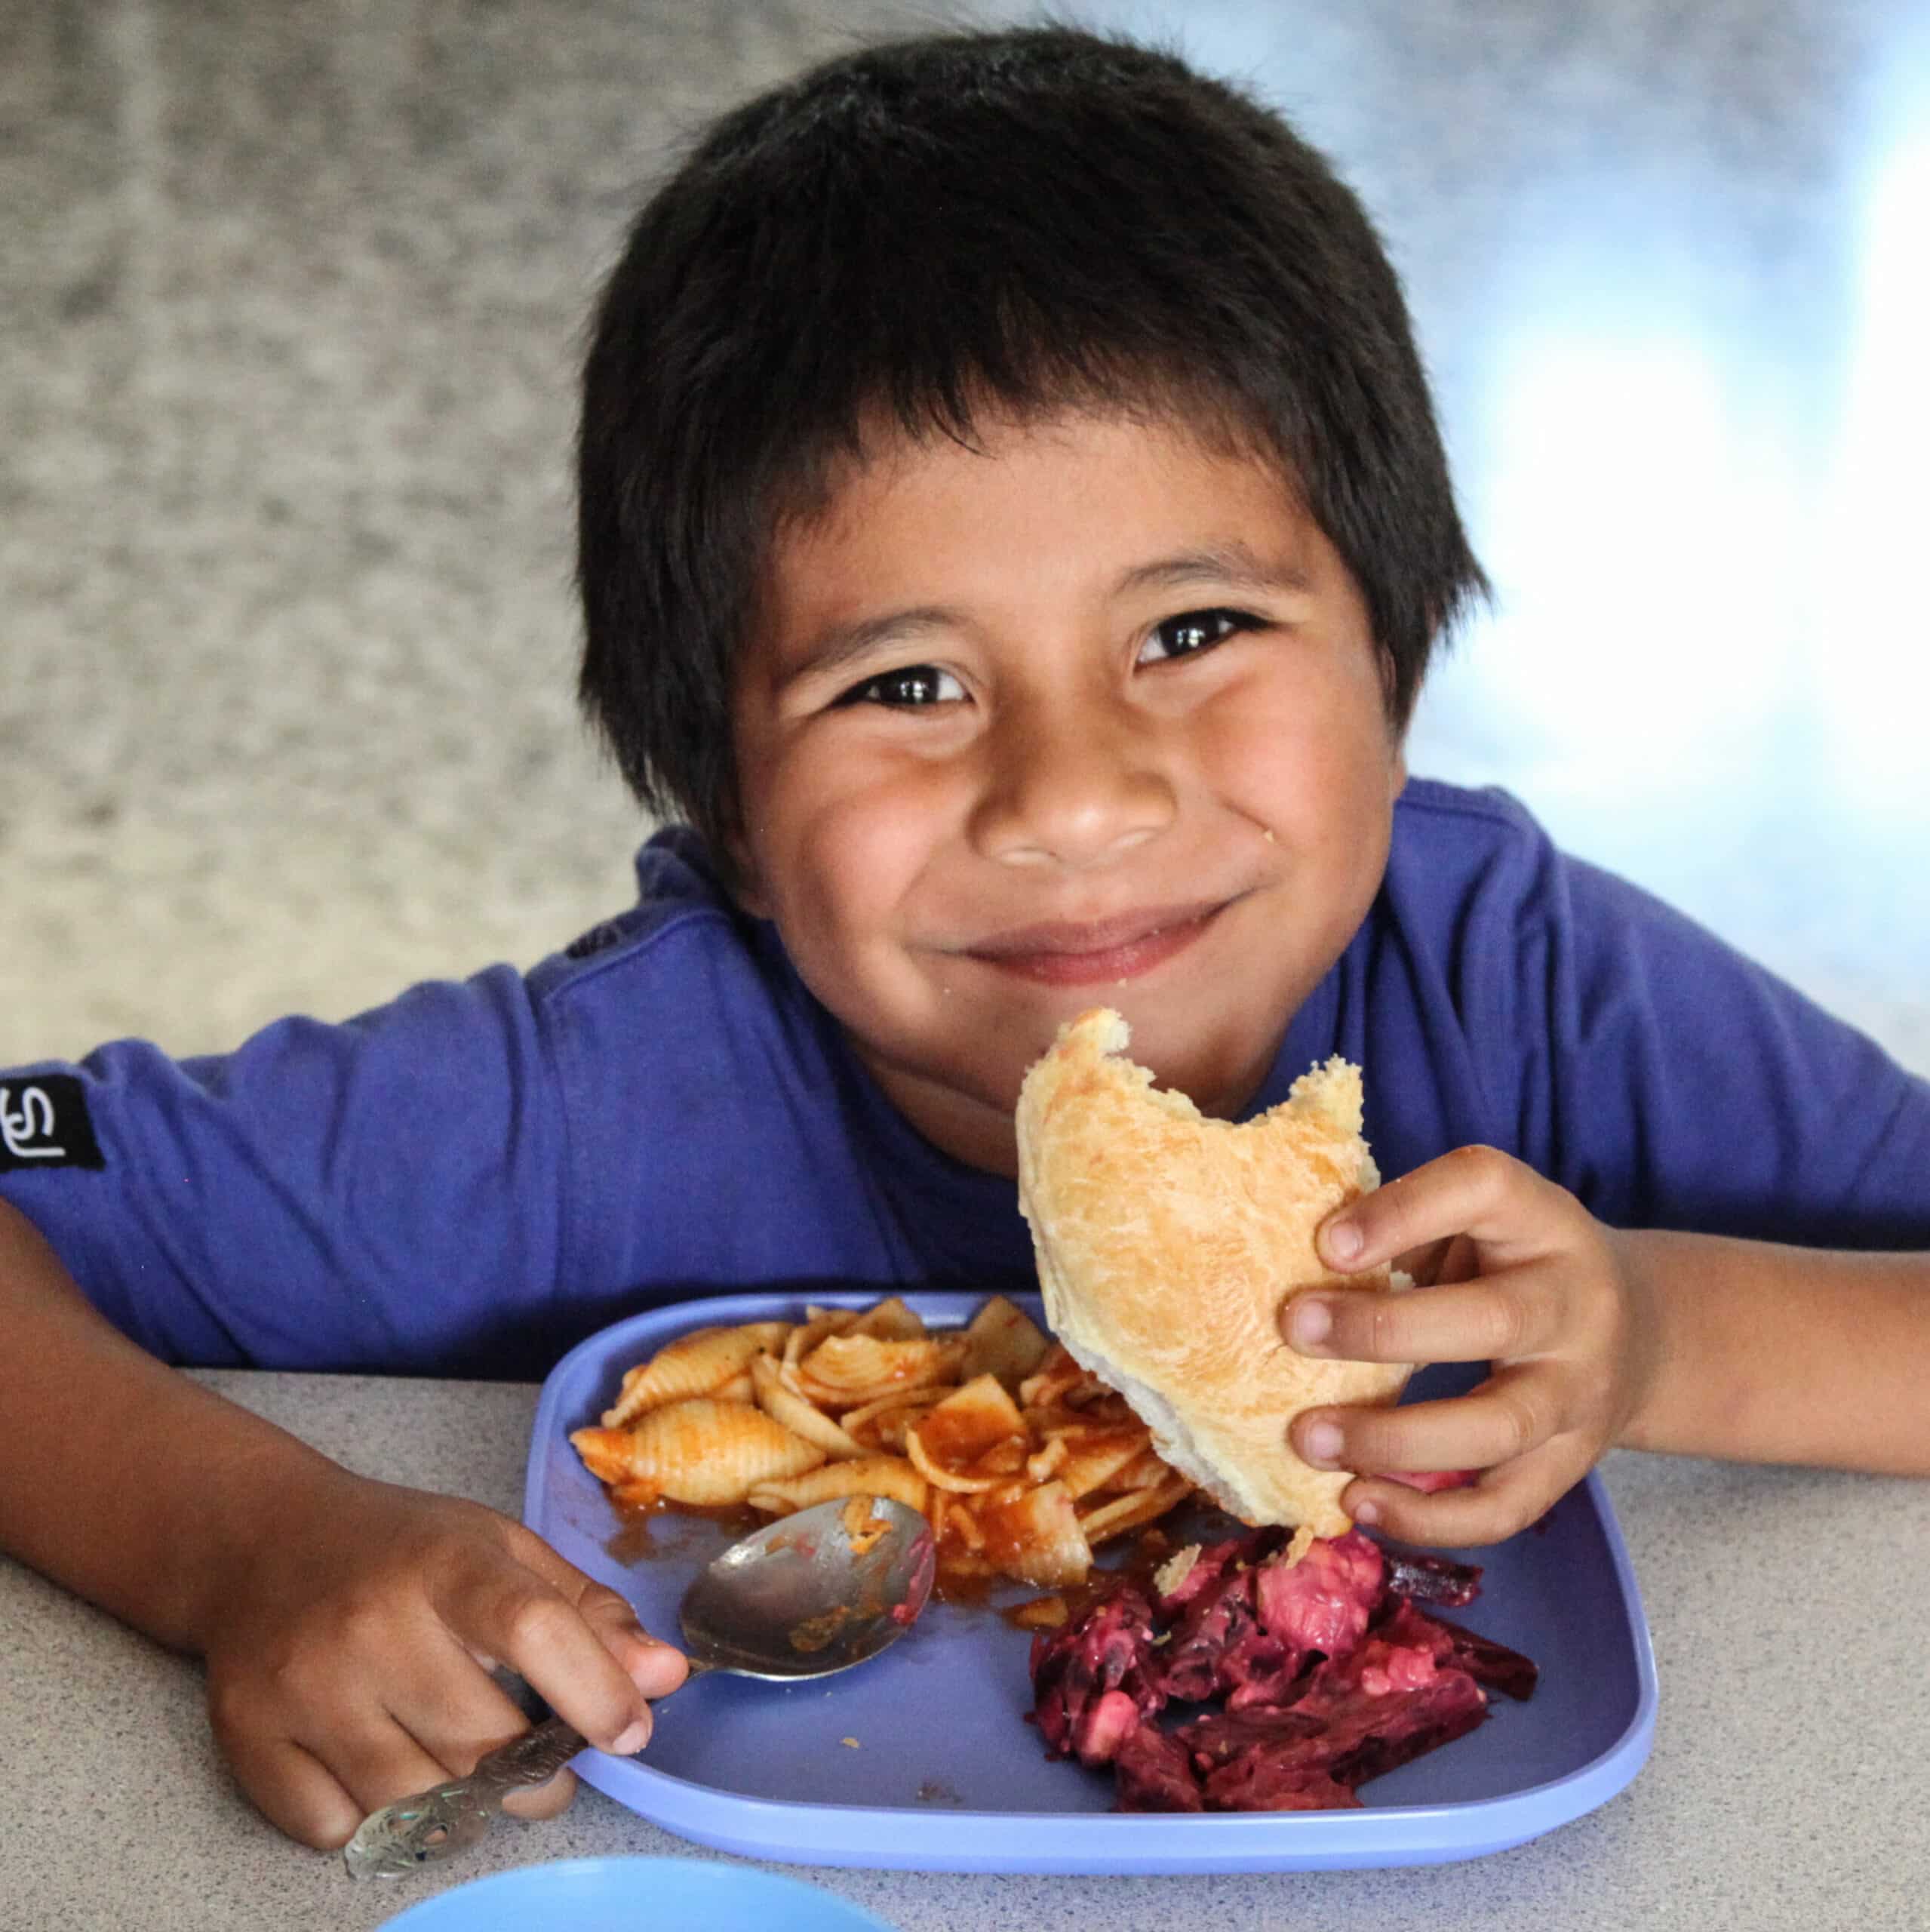 Der kleine Bub aus dem NPH Guatemala Projekt sitzt lächelnd vor einem vollen Teller mit Pasta und hält ein Brot in händen.